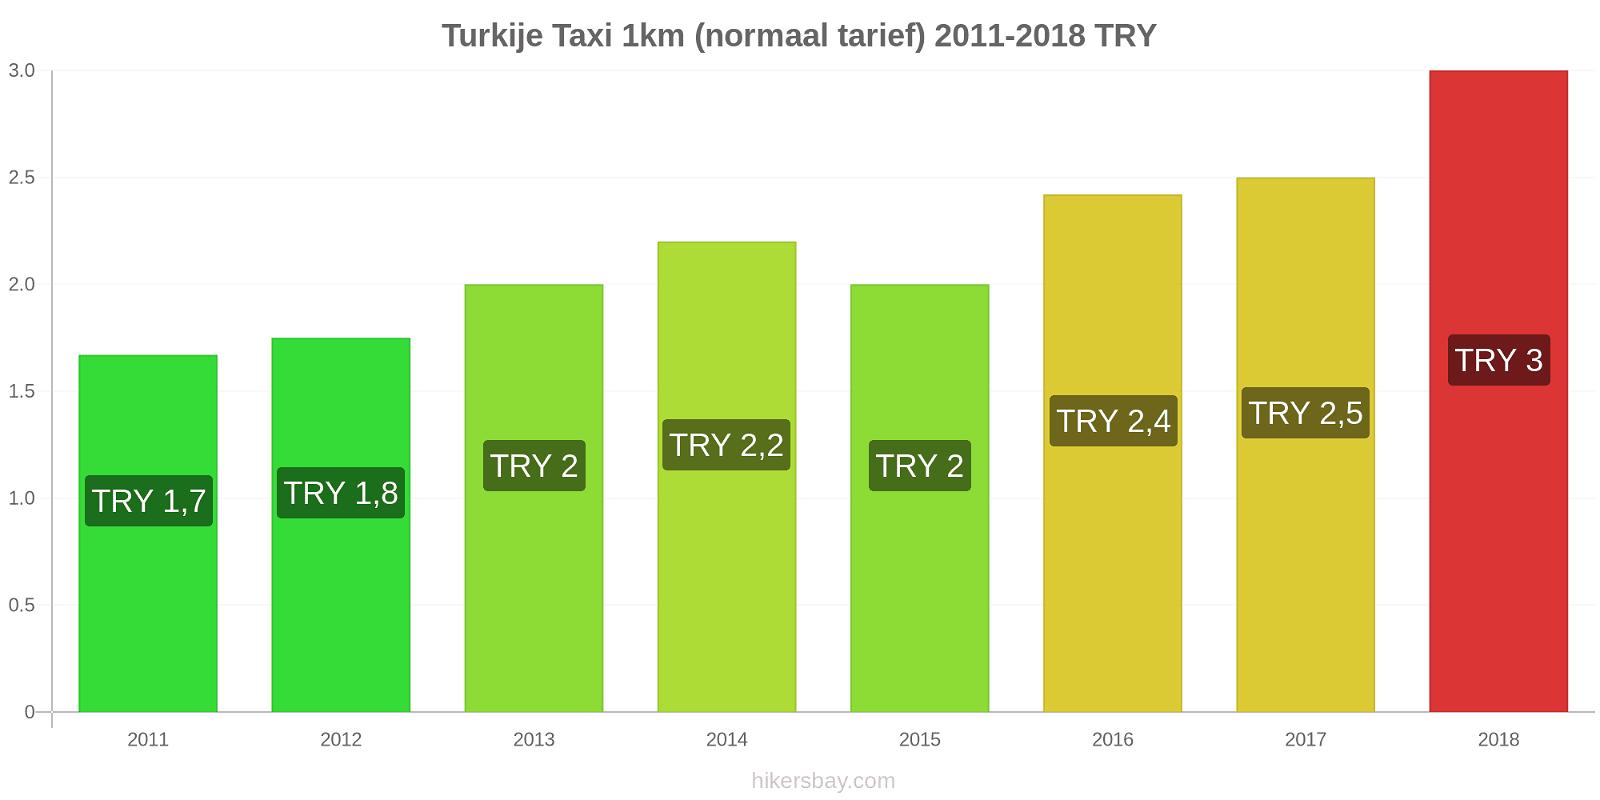 Turkije prijswijzigingen Taxi 1km (normaal tarief) hikersbay.com